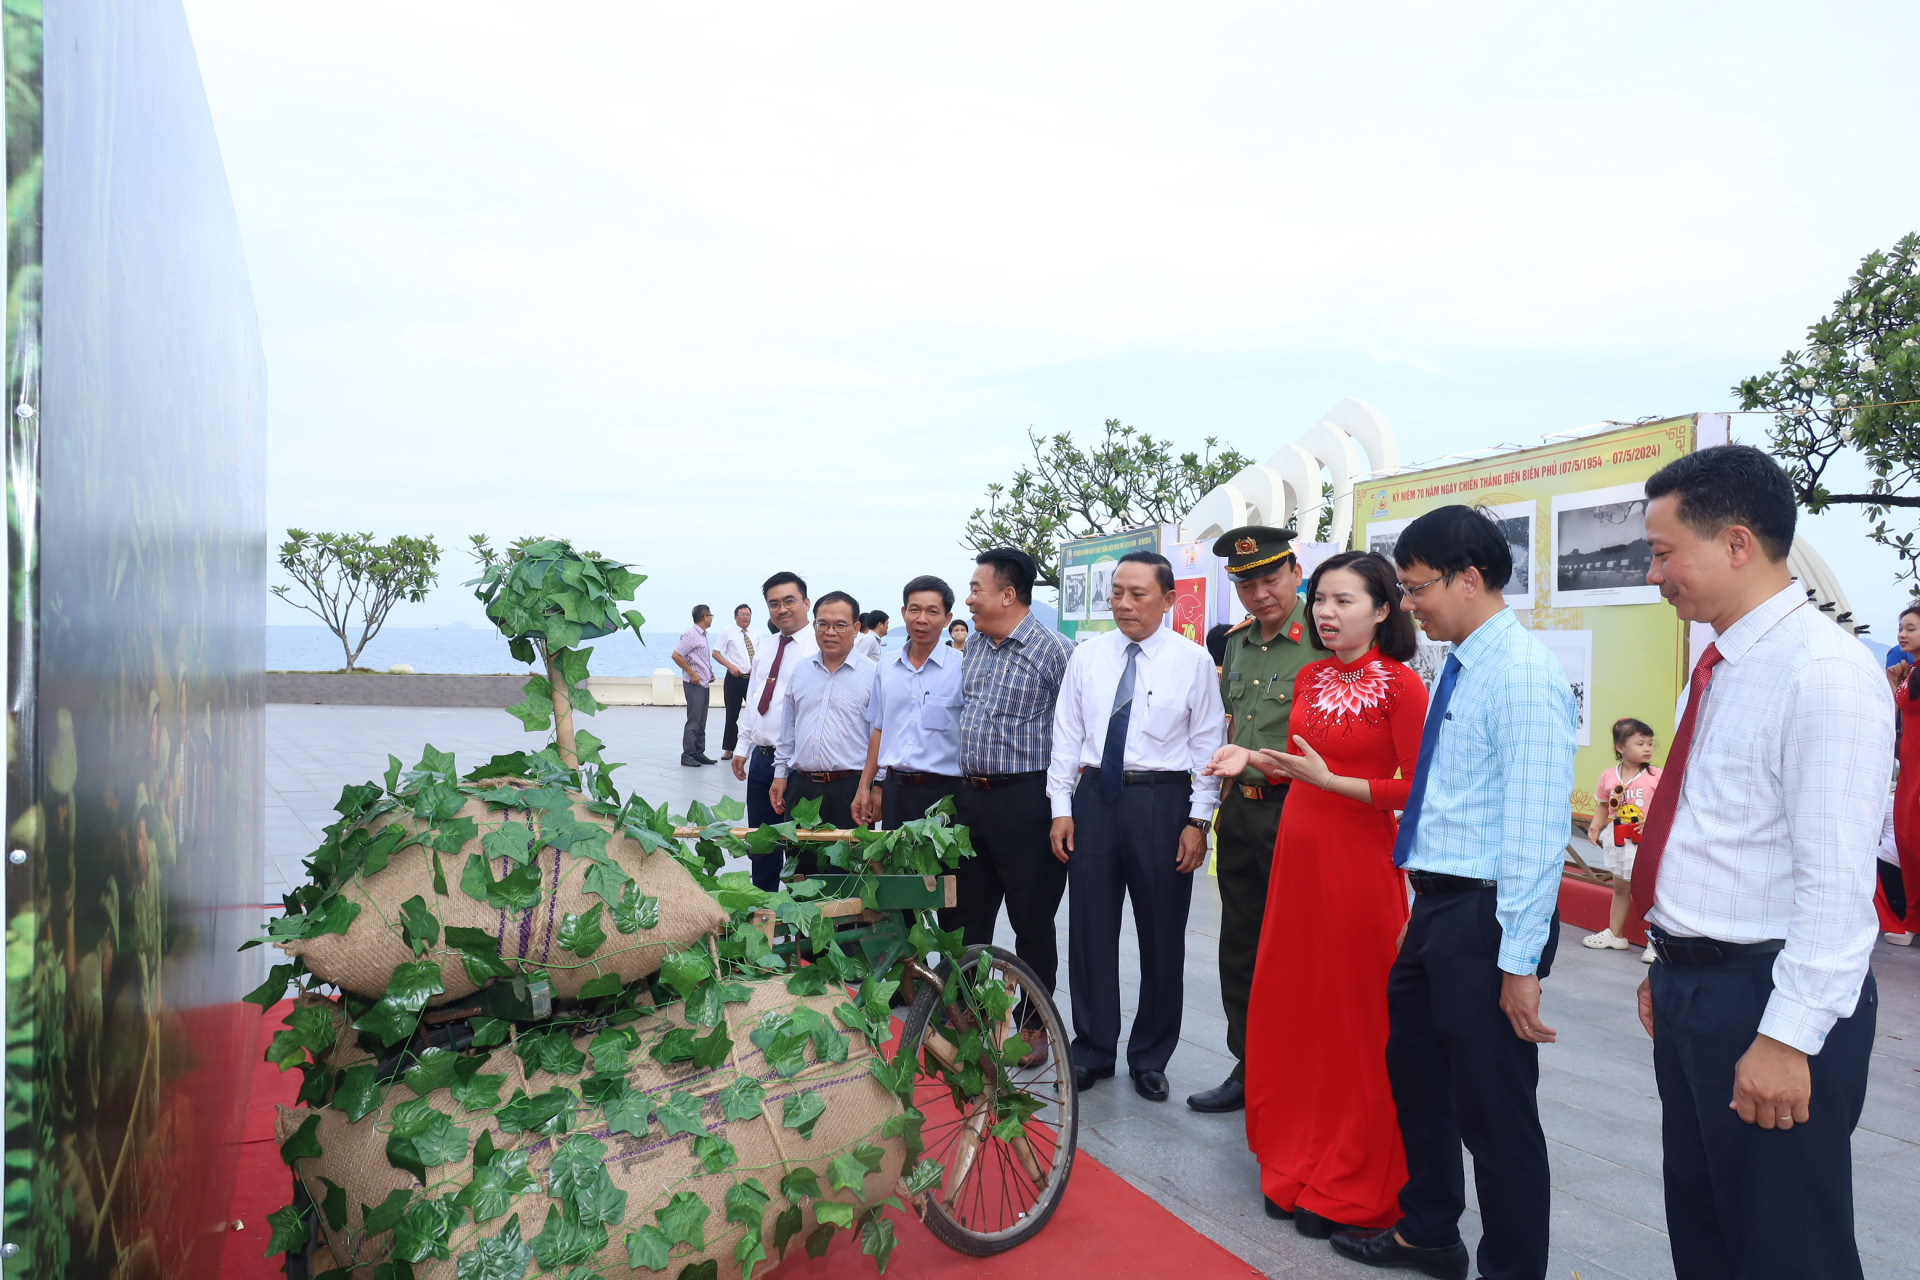 Hình ảnh chiếc xe đạp thồ gắn với lực lượng dân công trong chiến dịch Điện Biên Phủ cũng được giới thiệu tại triển lãm.